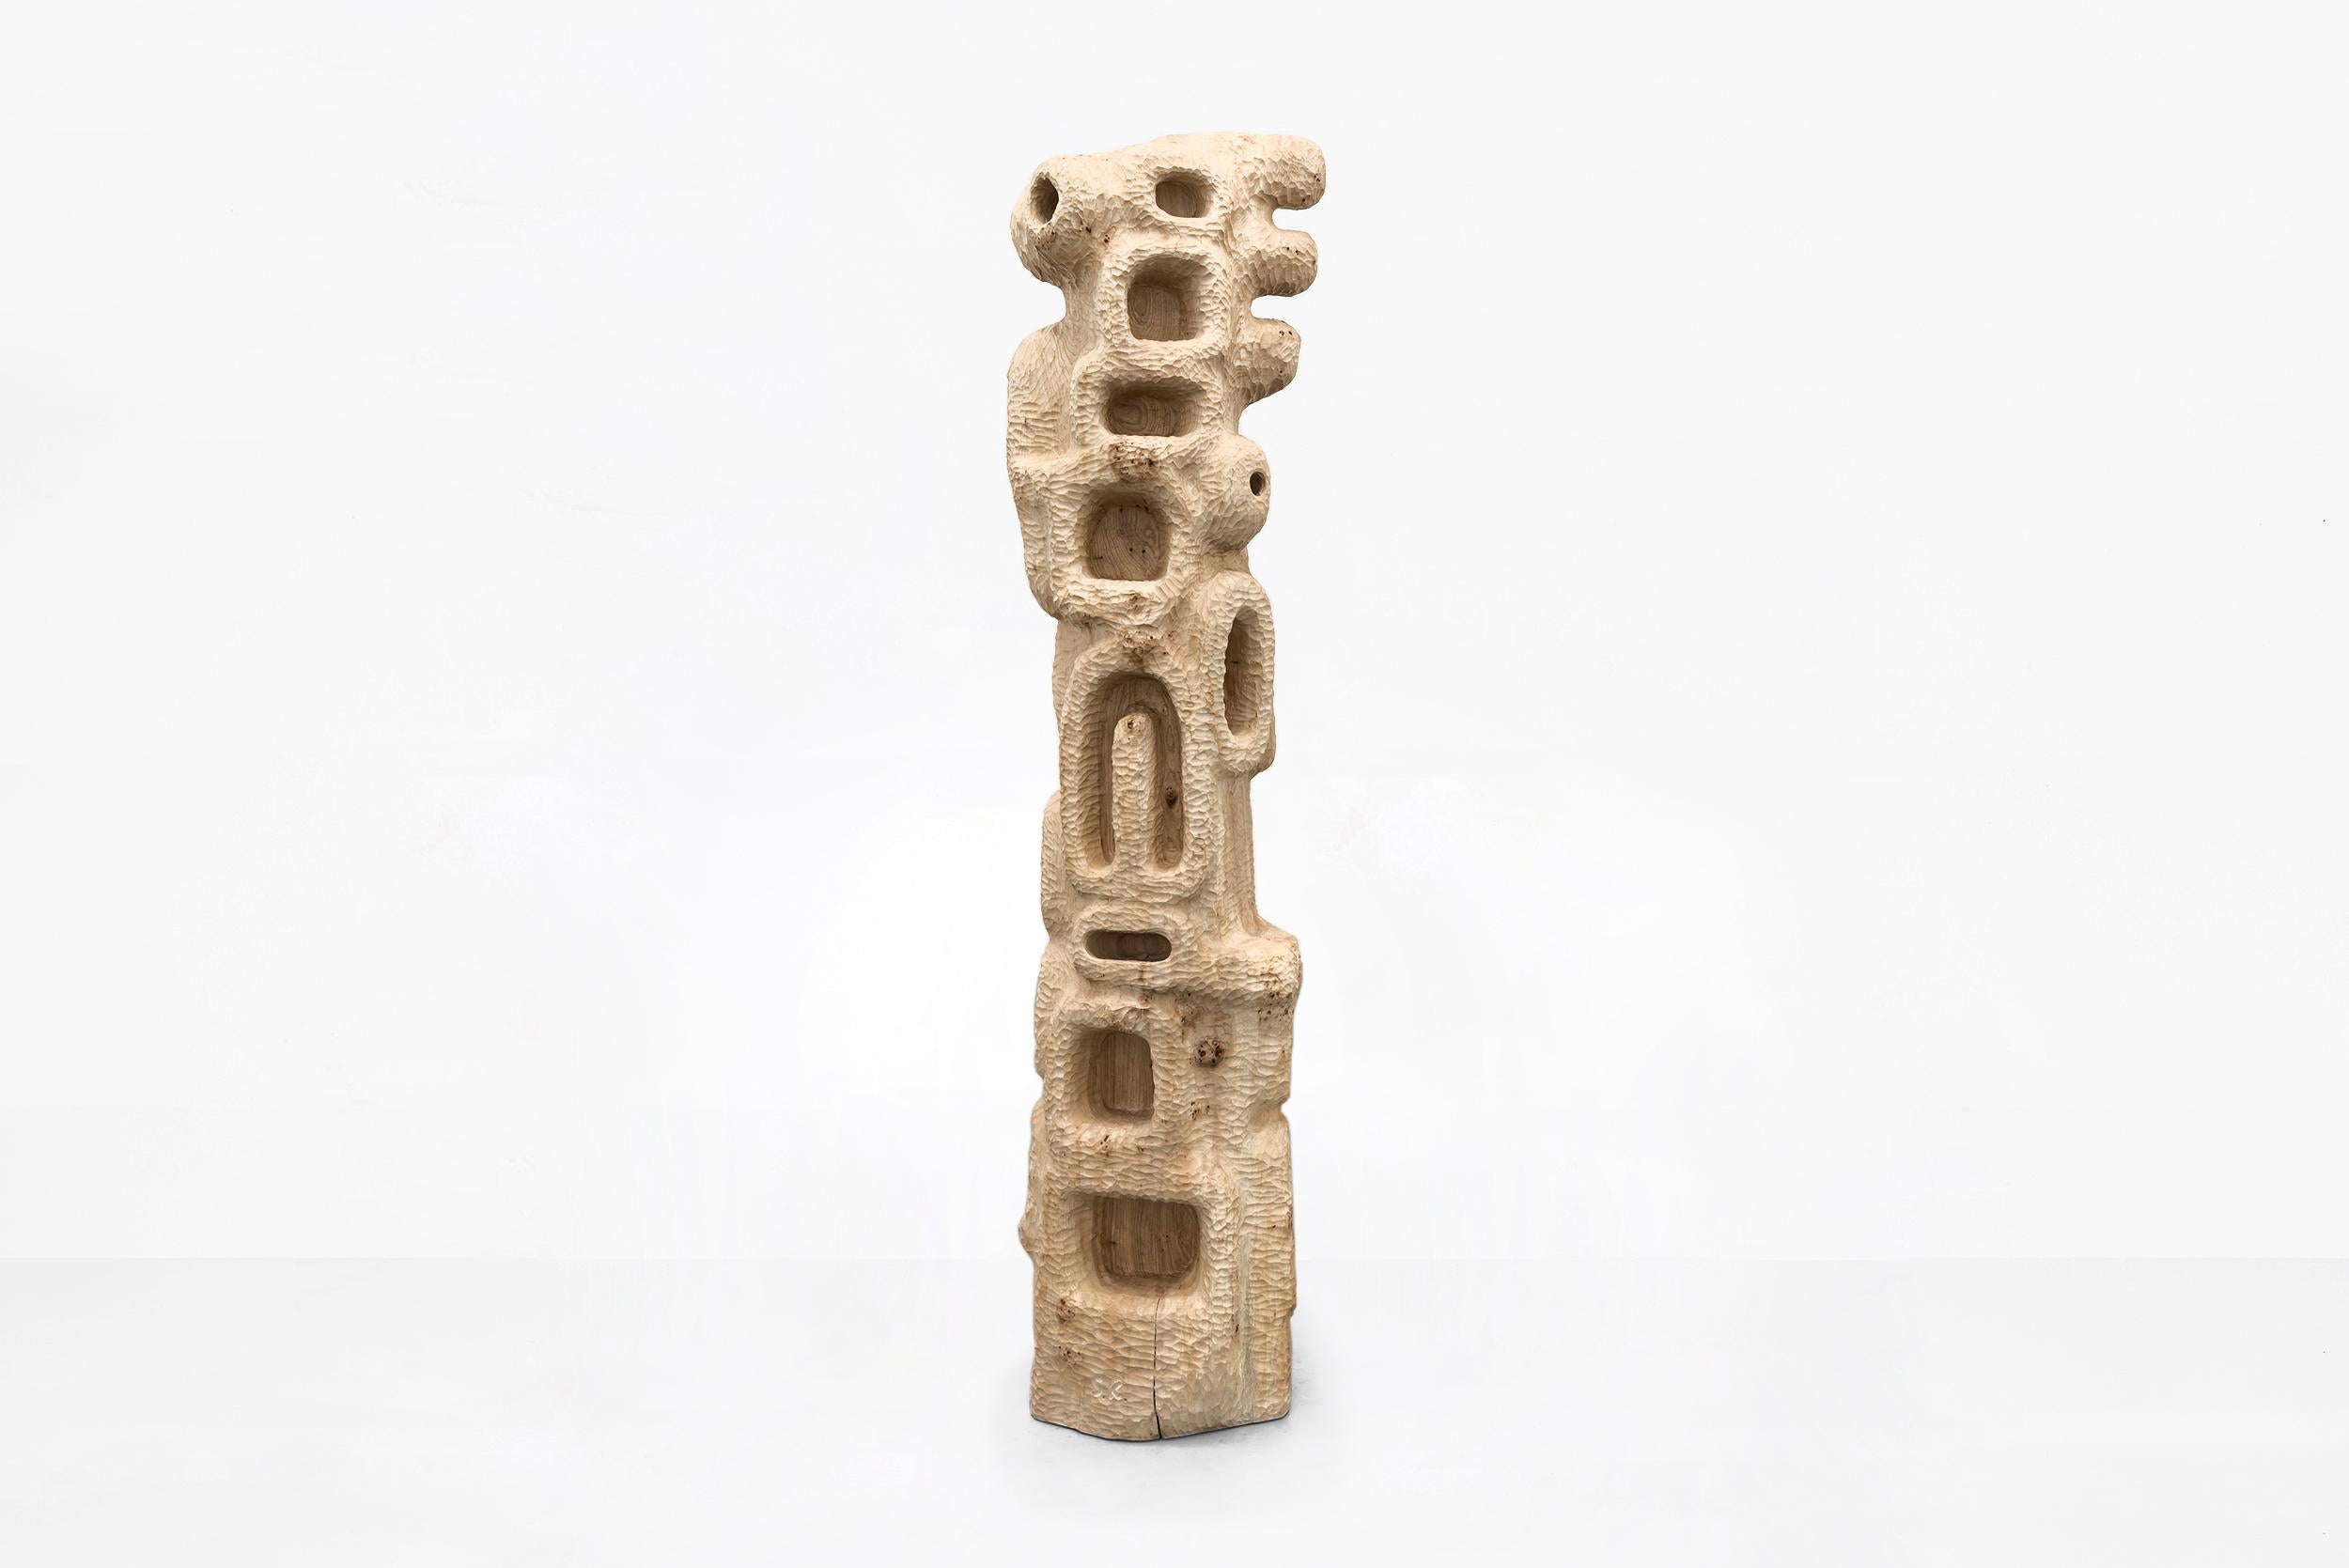 Sigve Kunston Holzregal Turm Nummer 2
Hergestellt von Sigve Knutson
Oslo, Norwegen, 2019
Holz, ALM
Produziert für Side-Gallery Barcelona 

Abmessungen:
45 cm x 35 cm x 180 H cm
17.71 in x 13.77 in x 70.86 H in

Auflage:
Einzigartiges